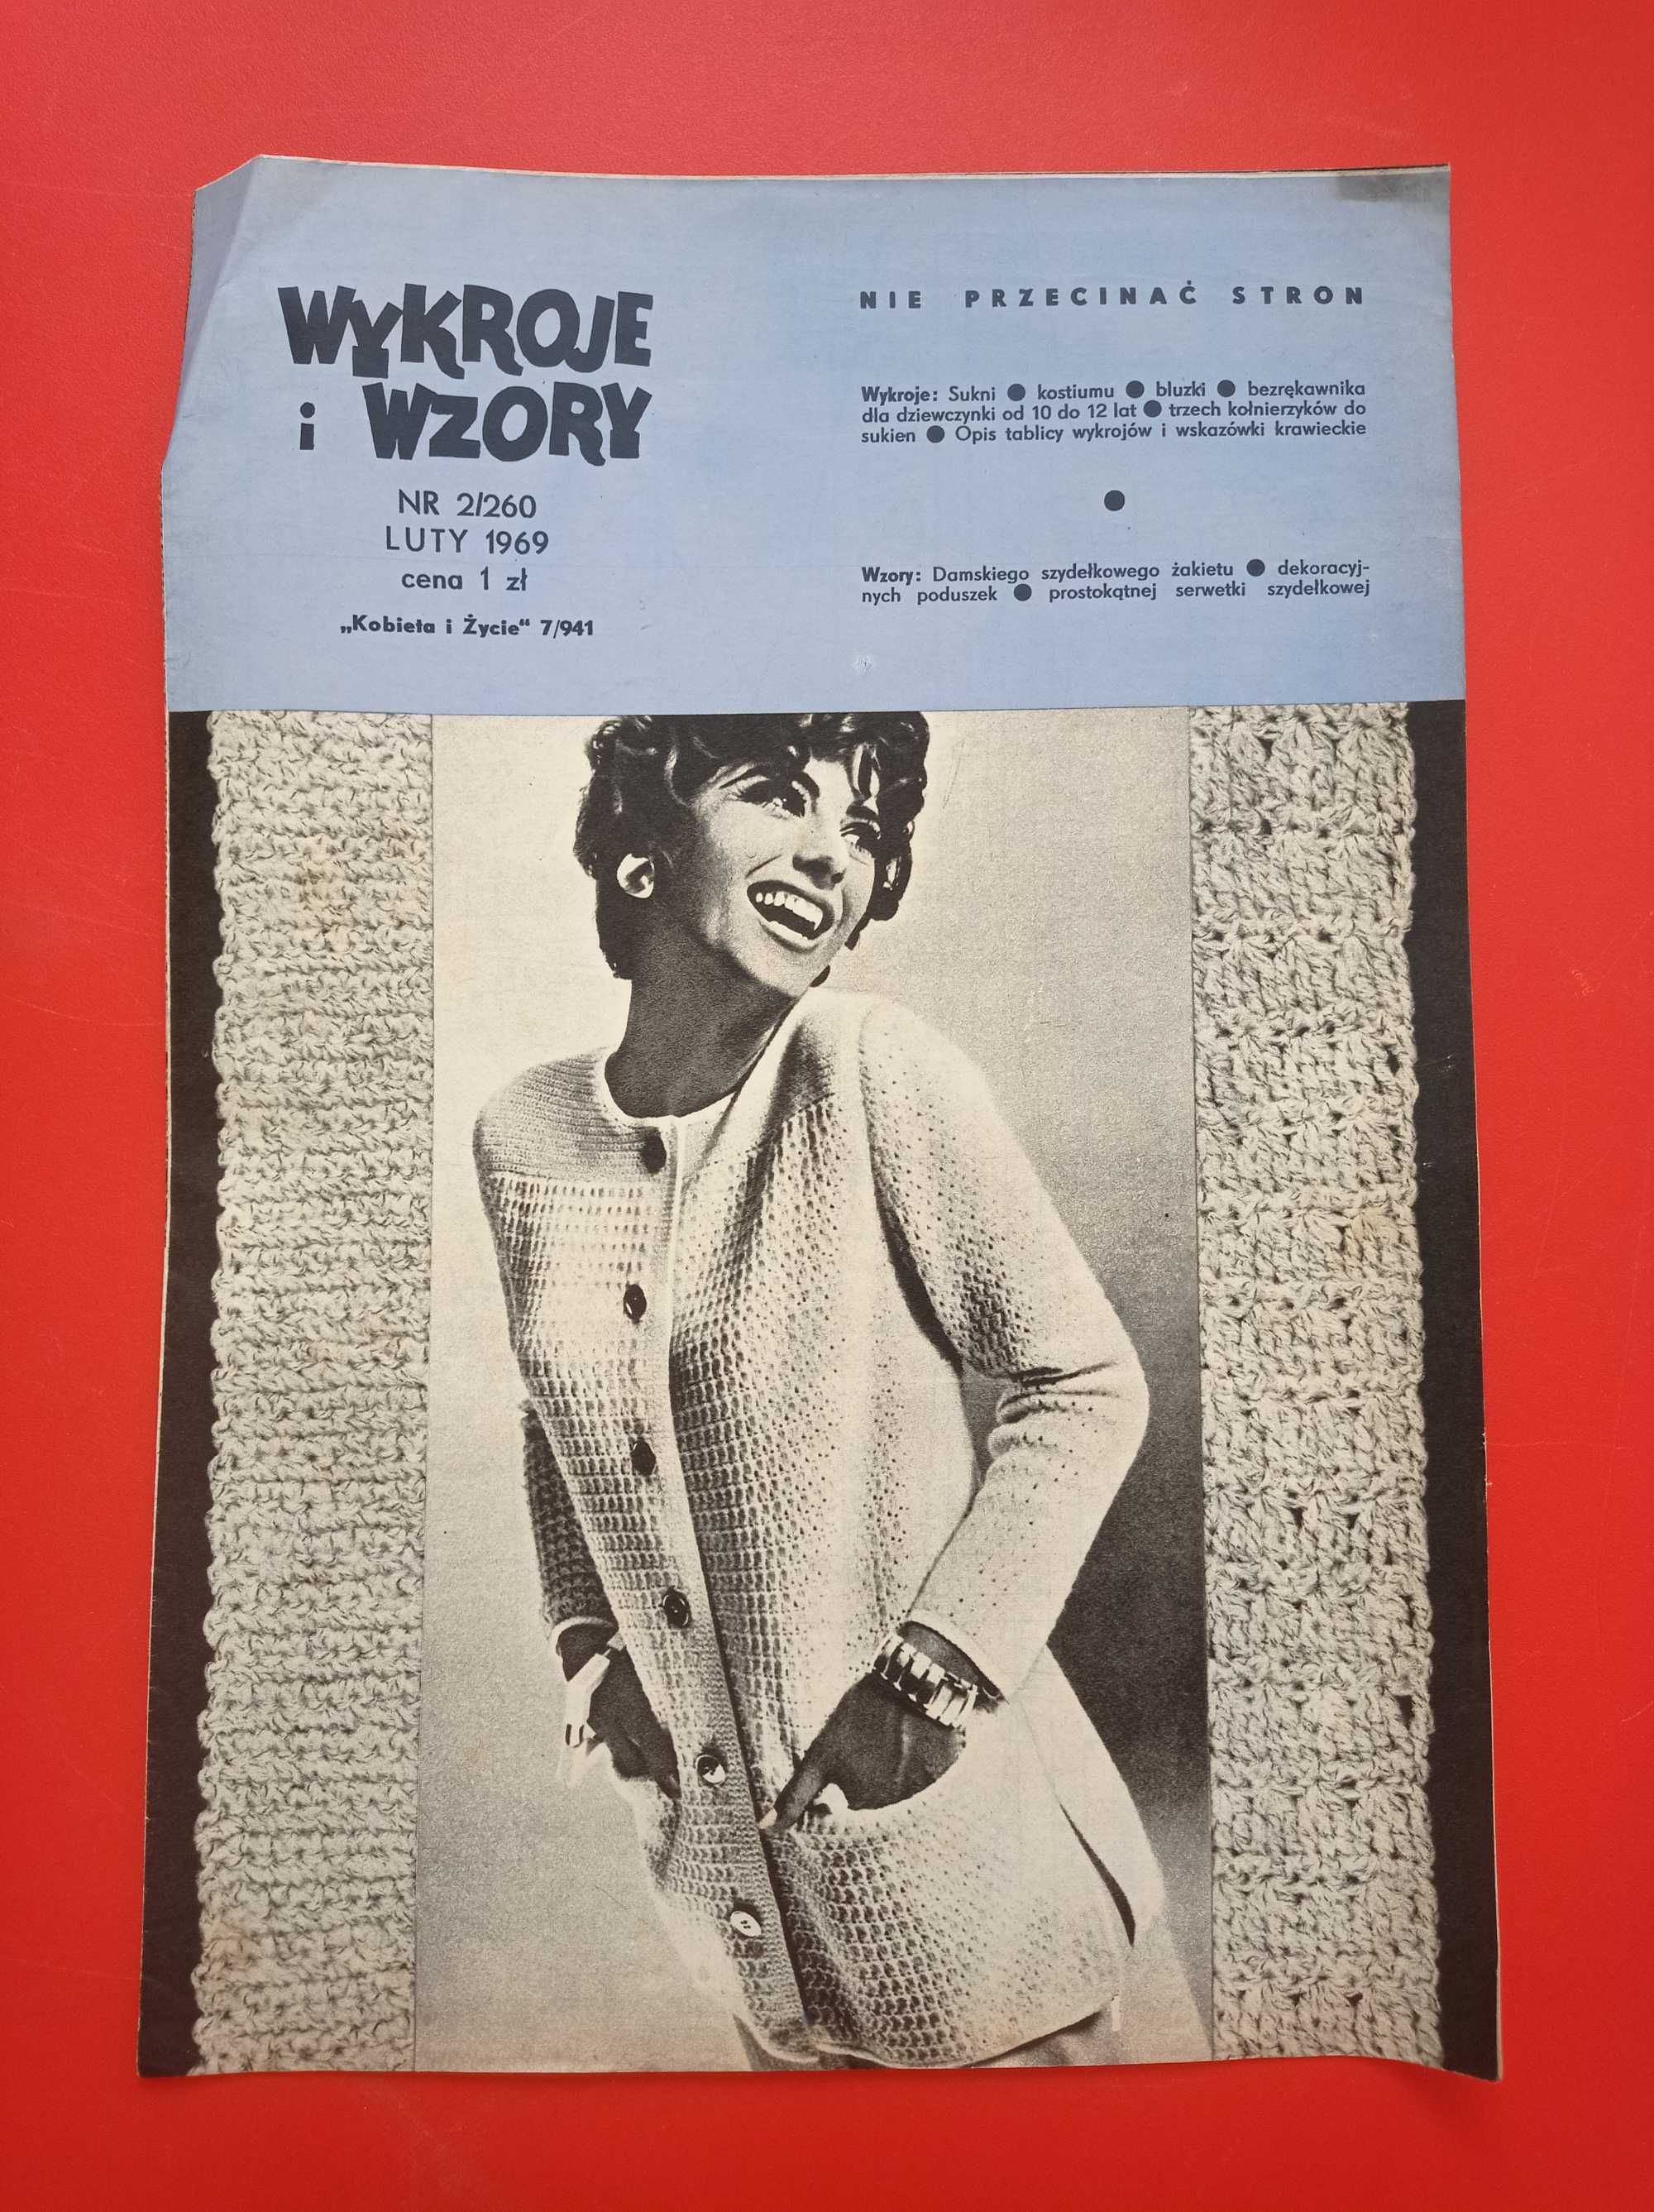 Wzory i wykroje, Kobieta i życie, luty 1969